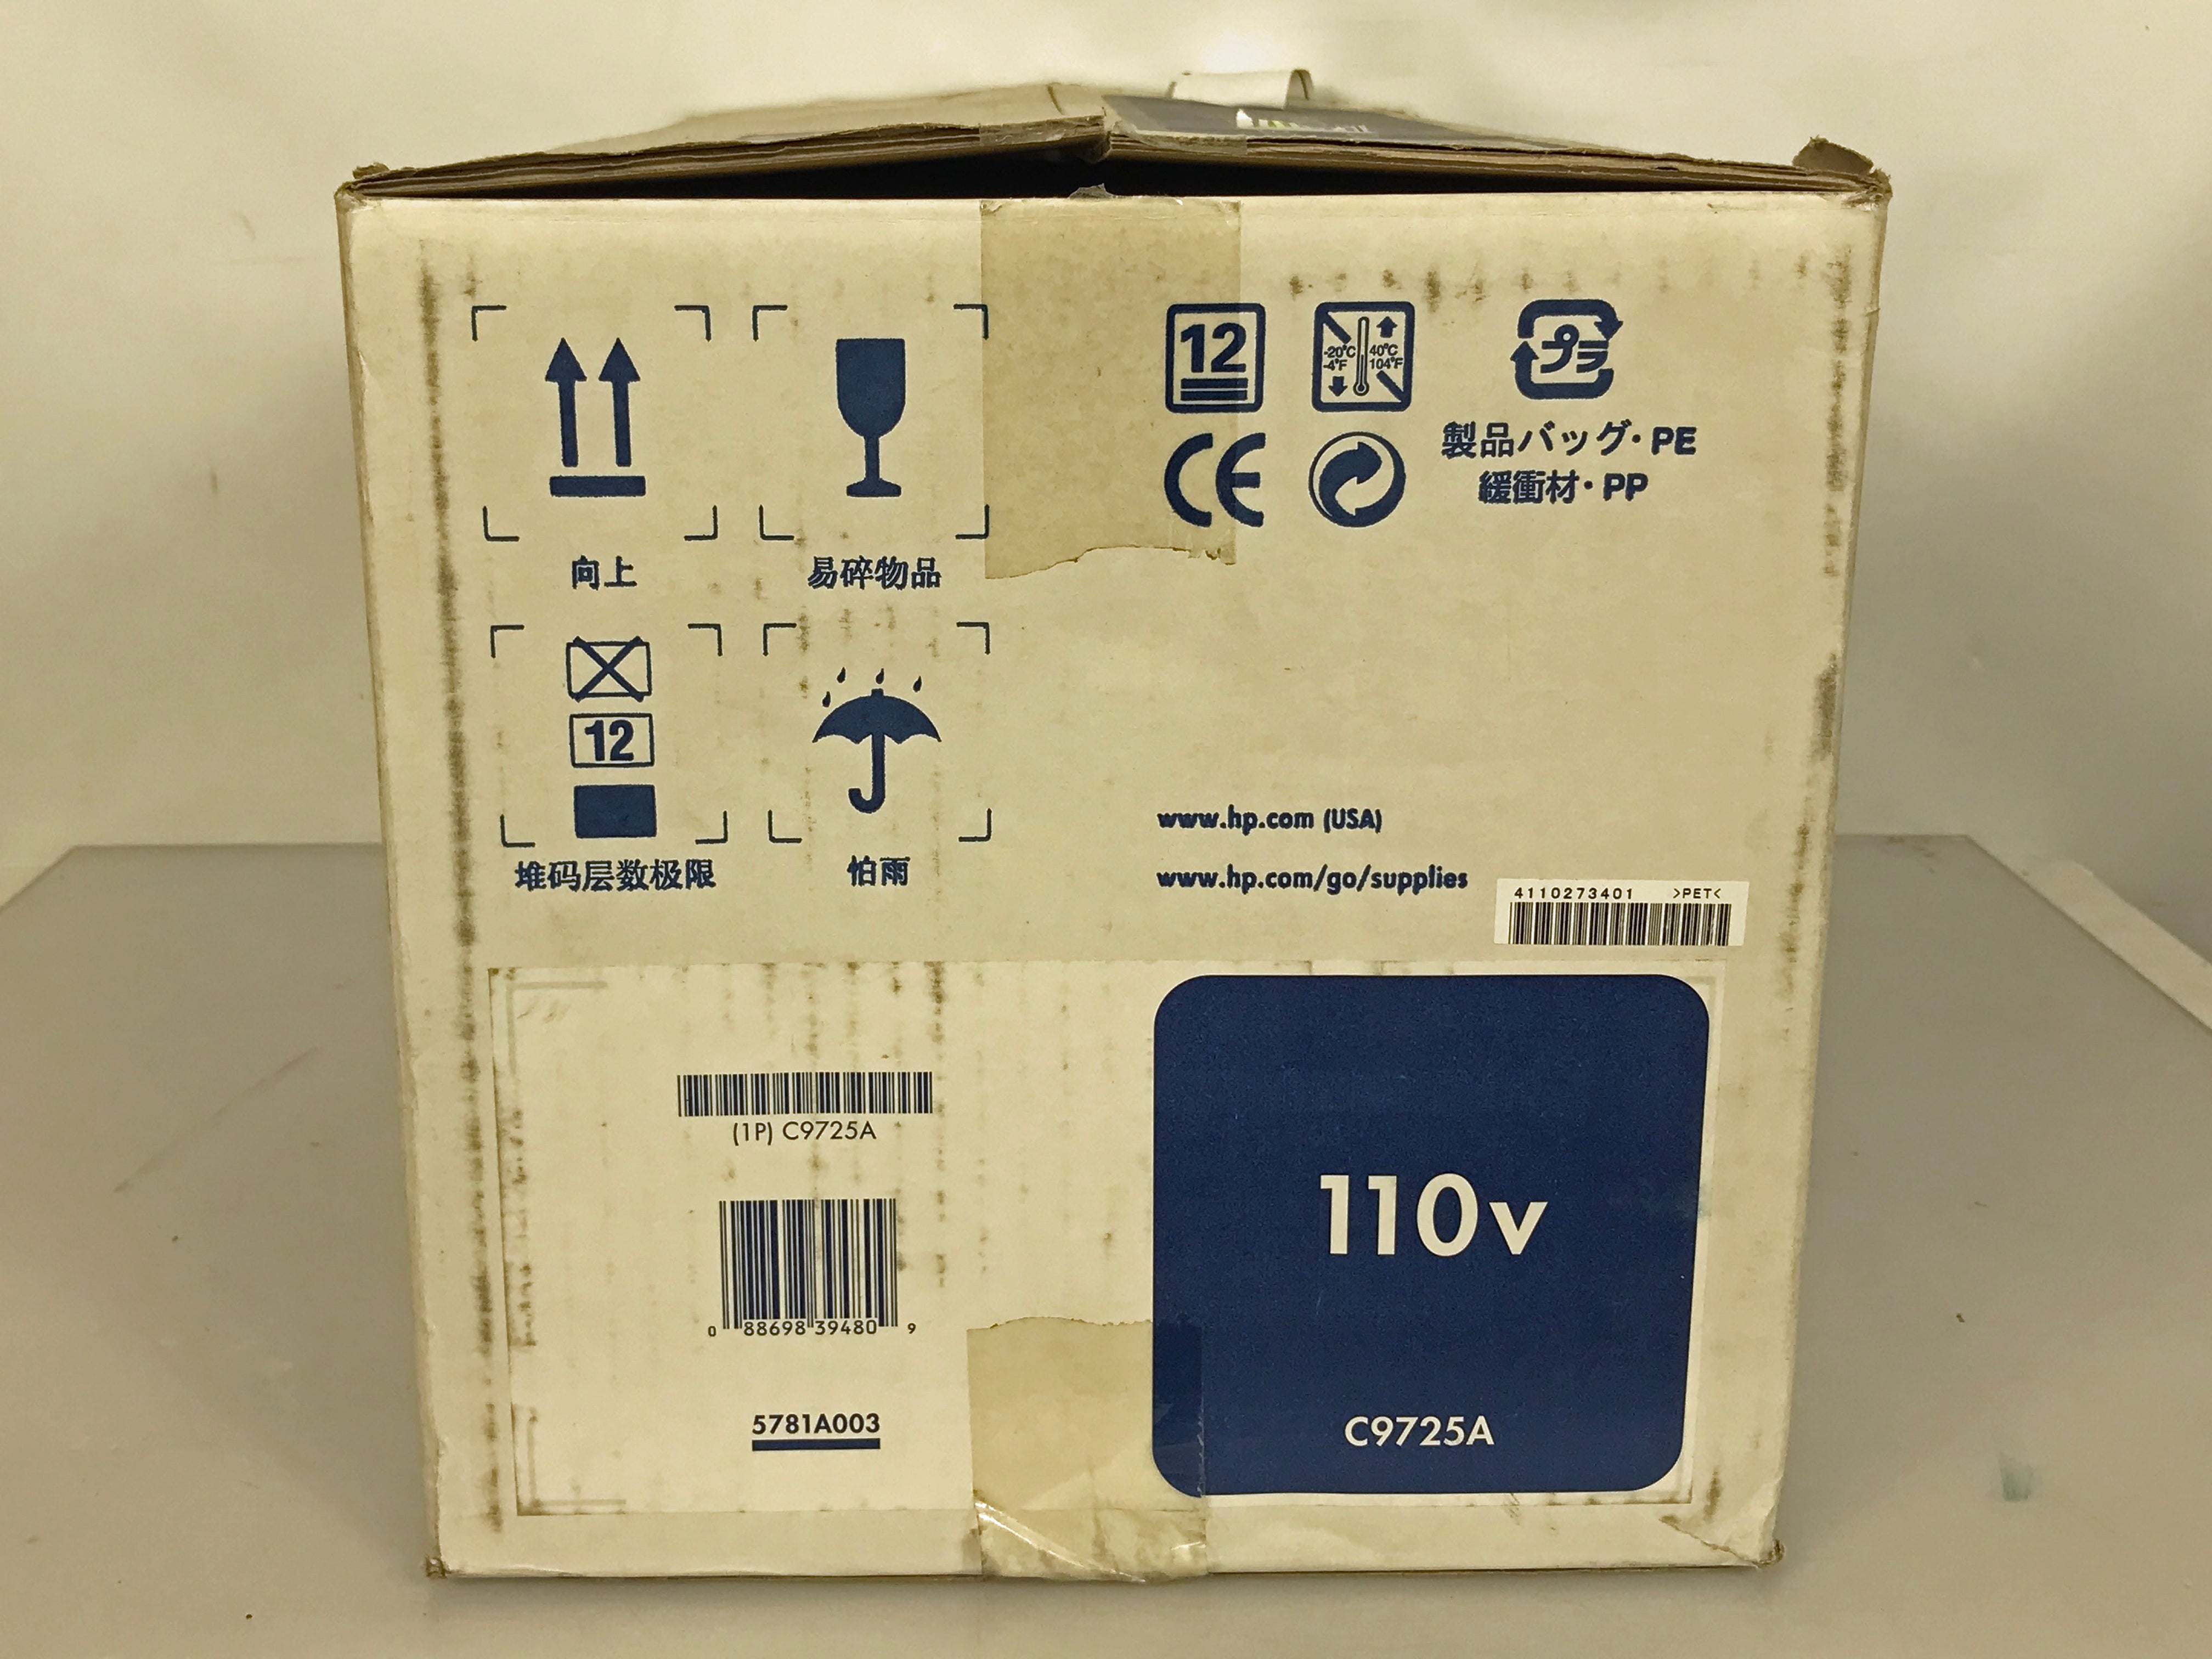 HP Color LaserJet 110V C9725A Image Fuser Kit